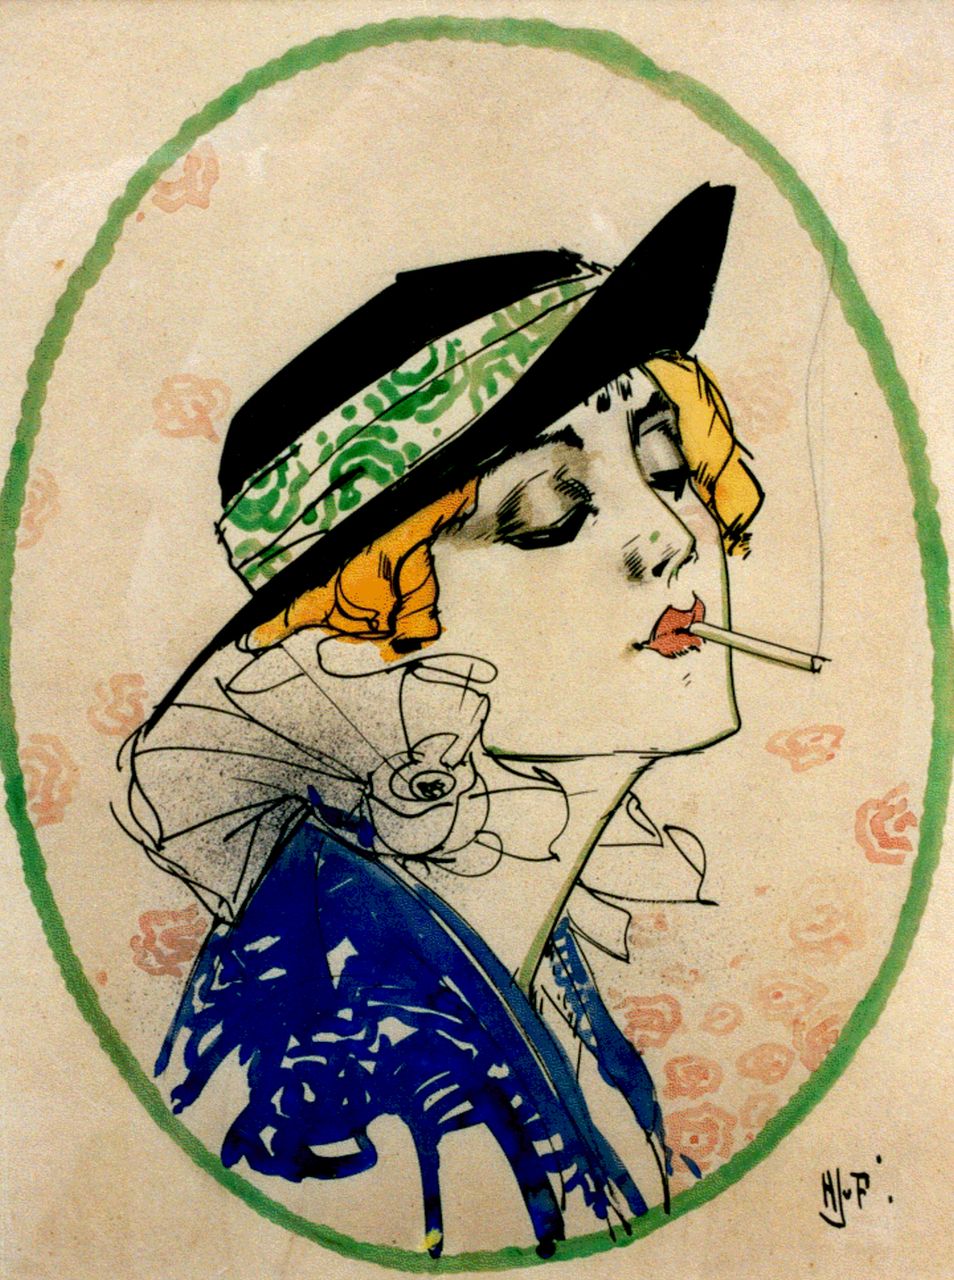 Piggelen H.J. van | H.J. van Piggelen, A lady with a cigarette, Aquarell auf Papier 51,0 x 39,0 cm, signed l.r. with initials